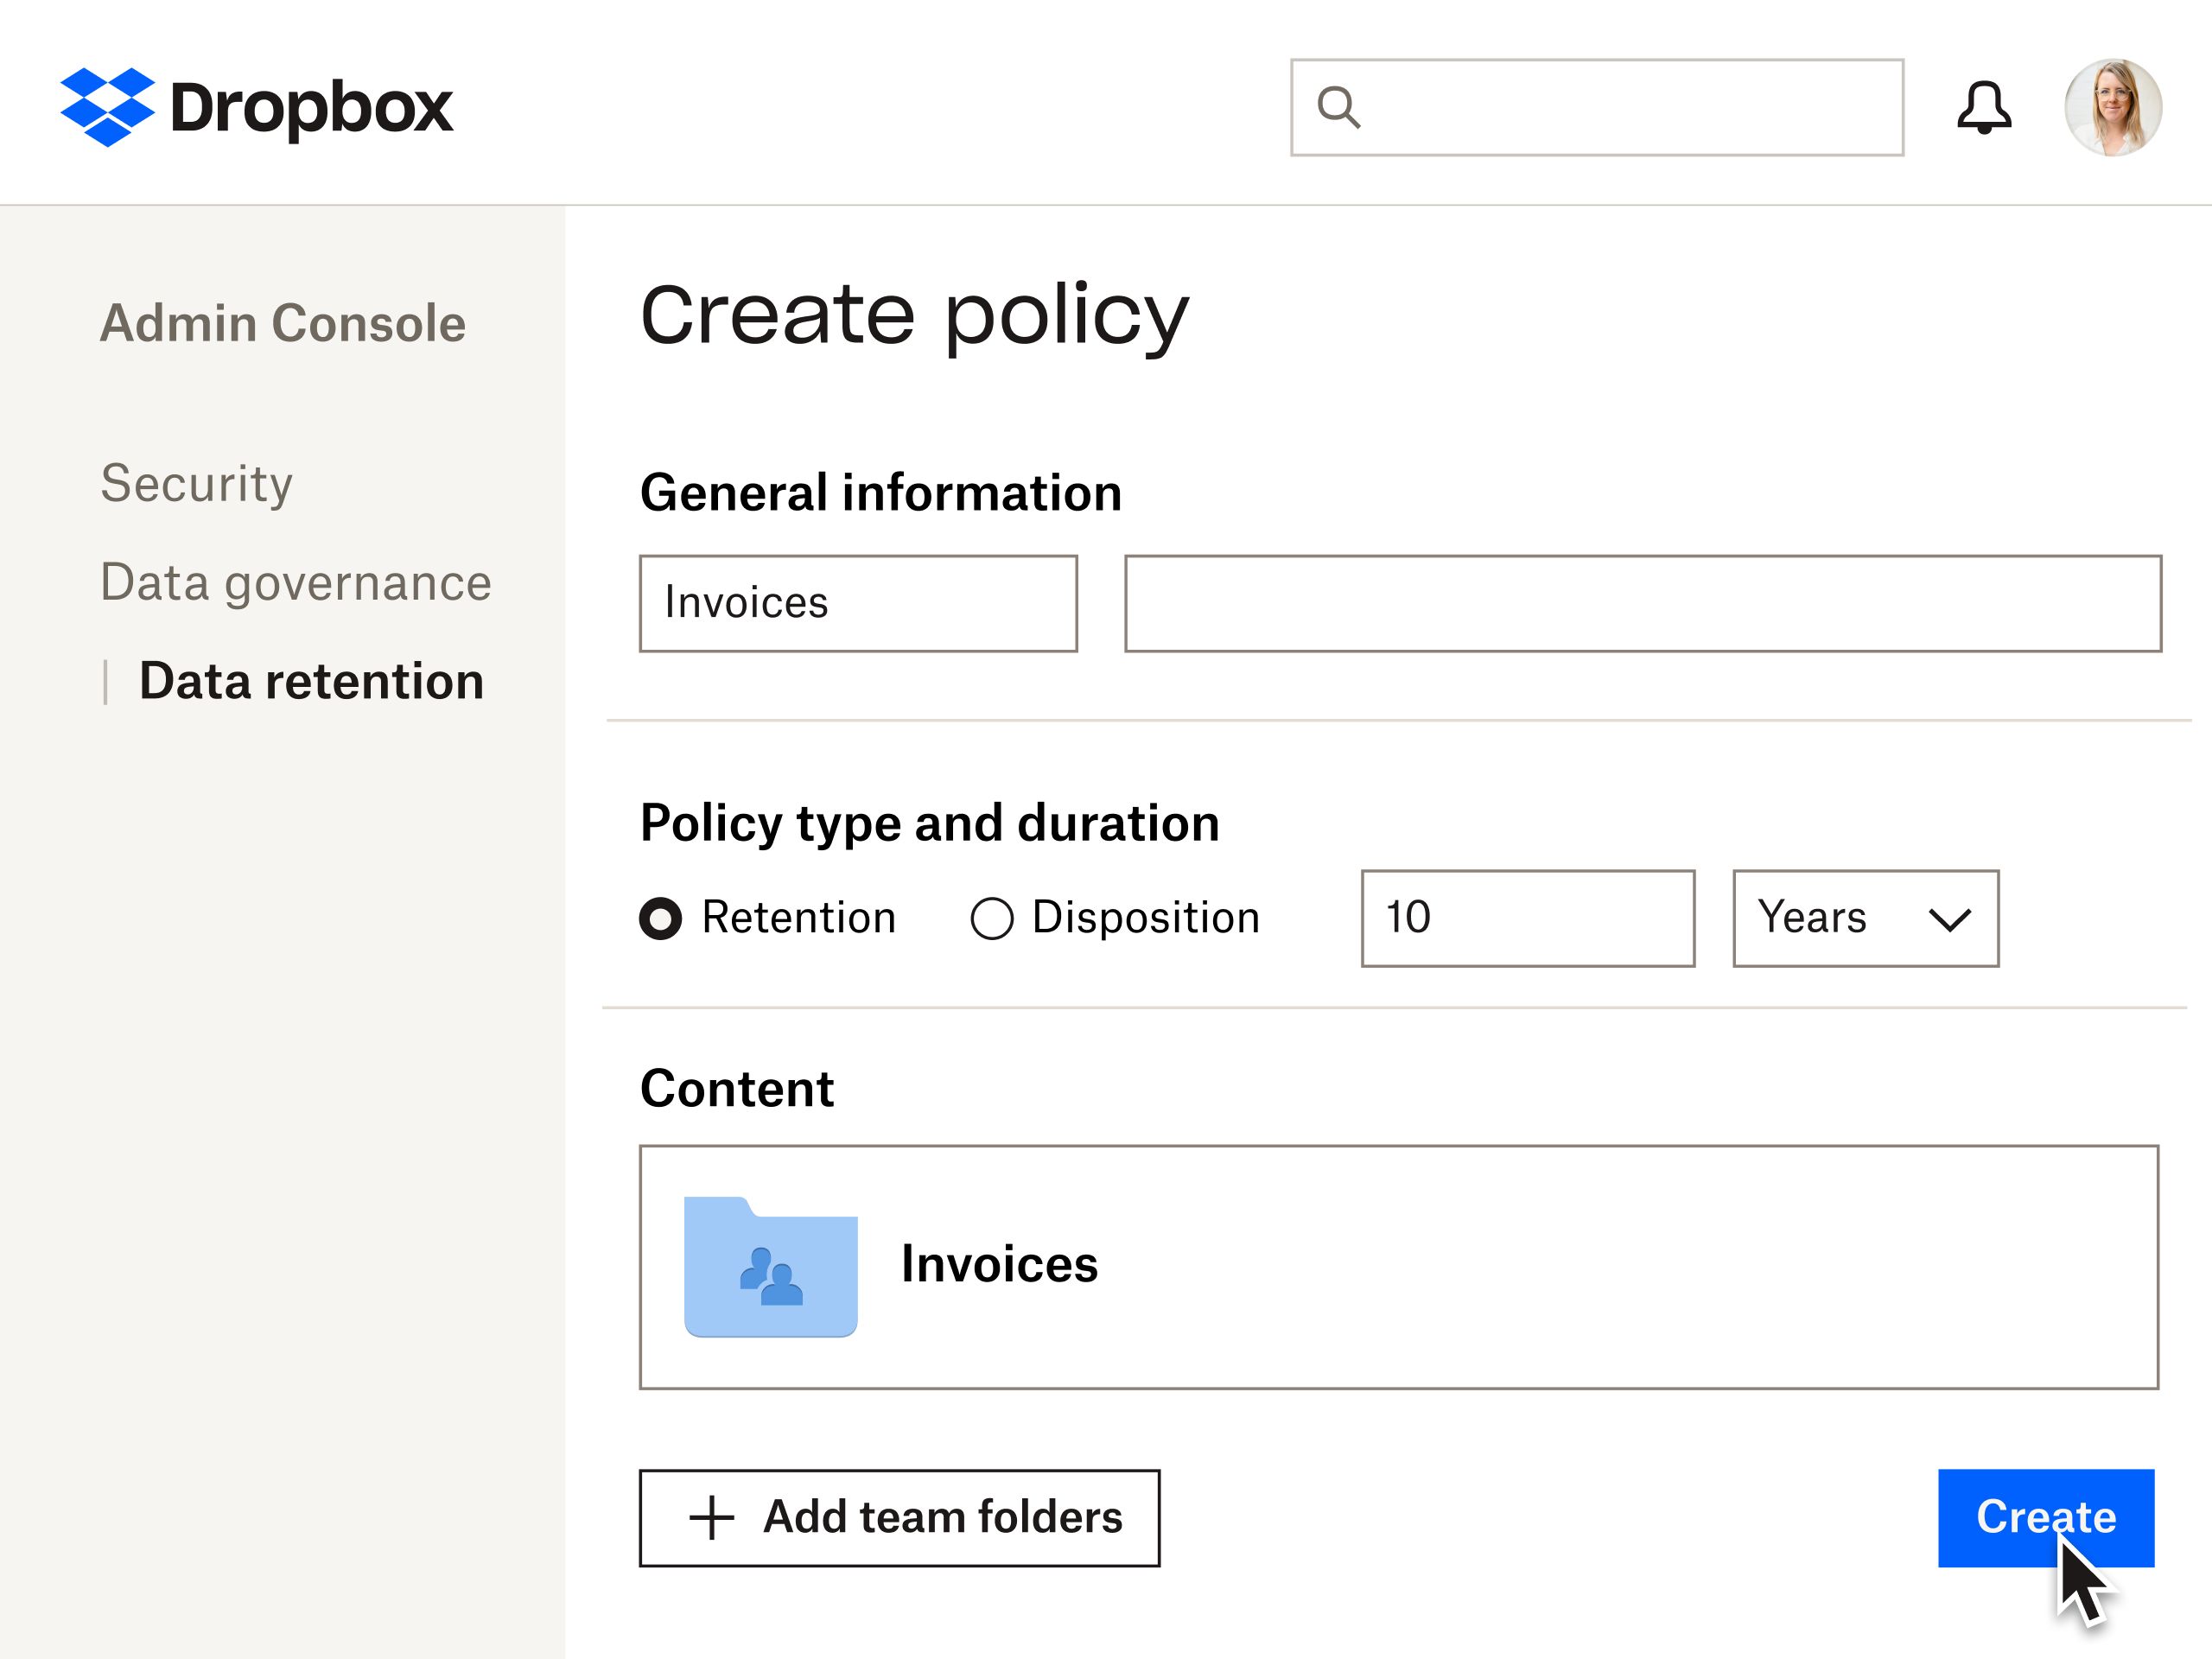 Et visuelt eksempel på prosessen for å lage en policy for dataoppbevaring med Dropbox-tilleggsprogram for datastyring.